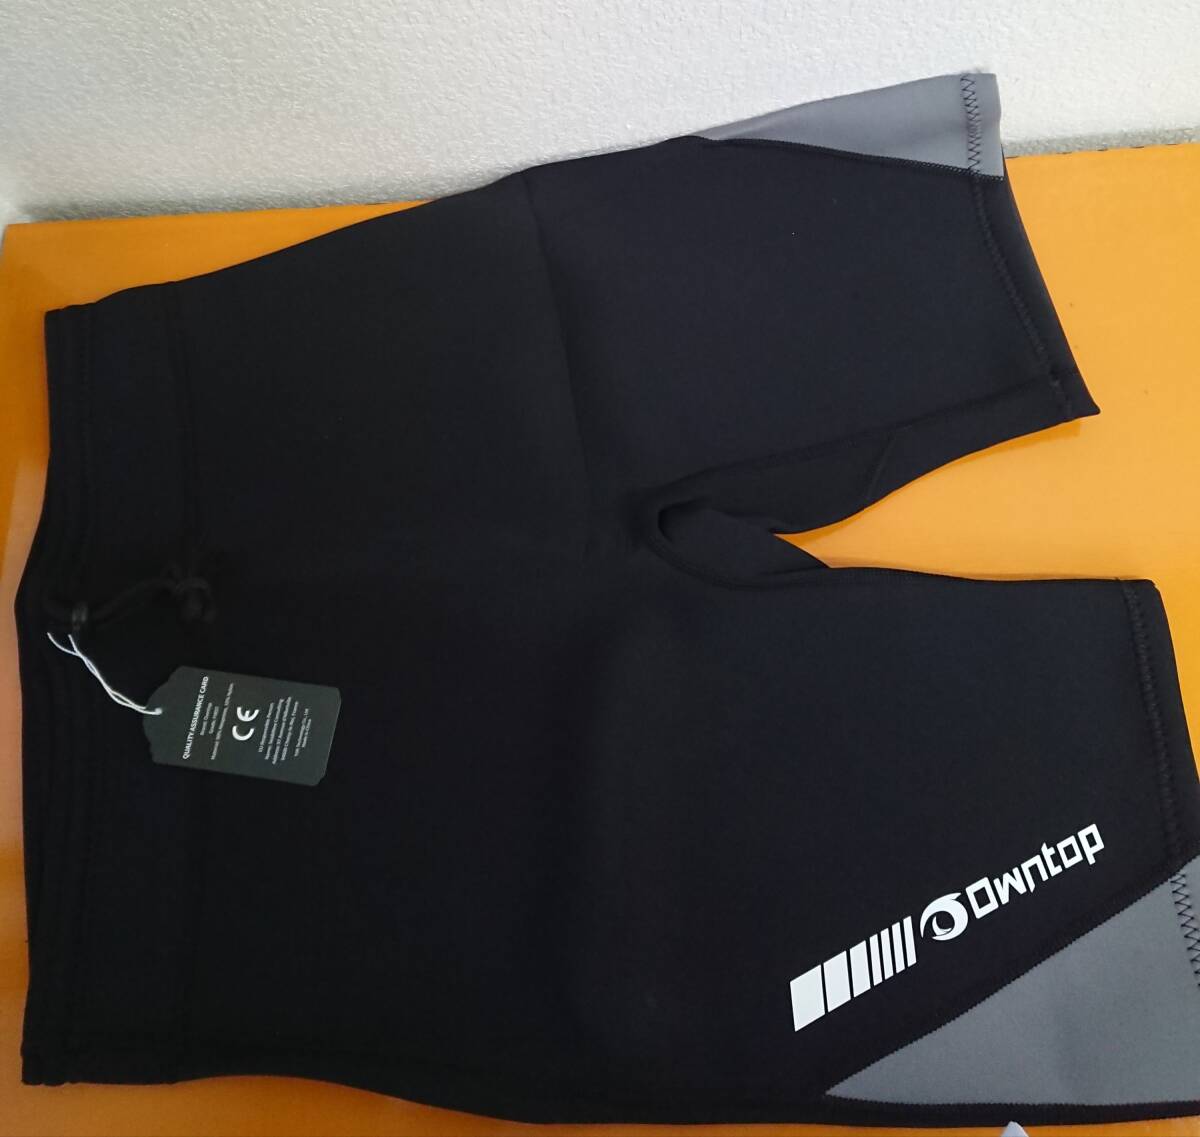 Owntop мужской мокрый костюм брюки - 3mm/2mm Neo pre n солнцезащитное средство дайвинг рубашка стрейч UV cut морской спорт L размер 